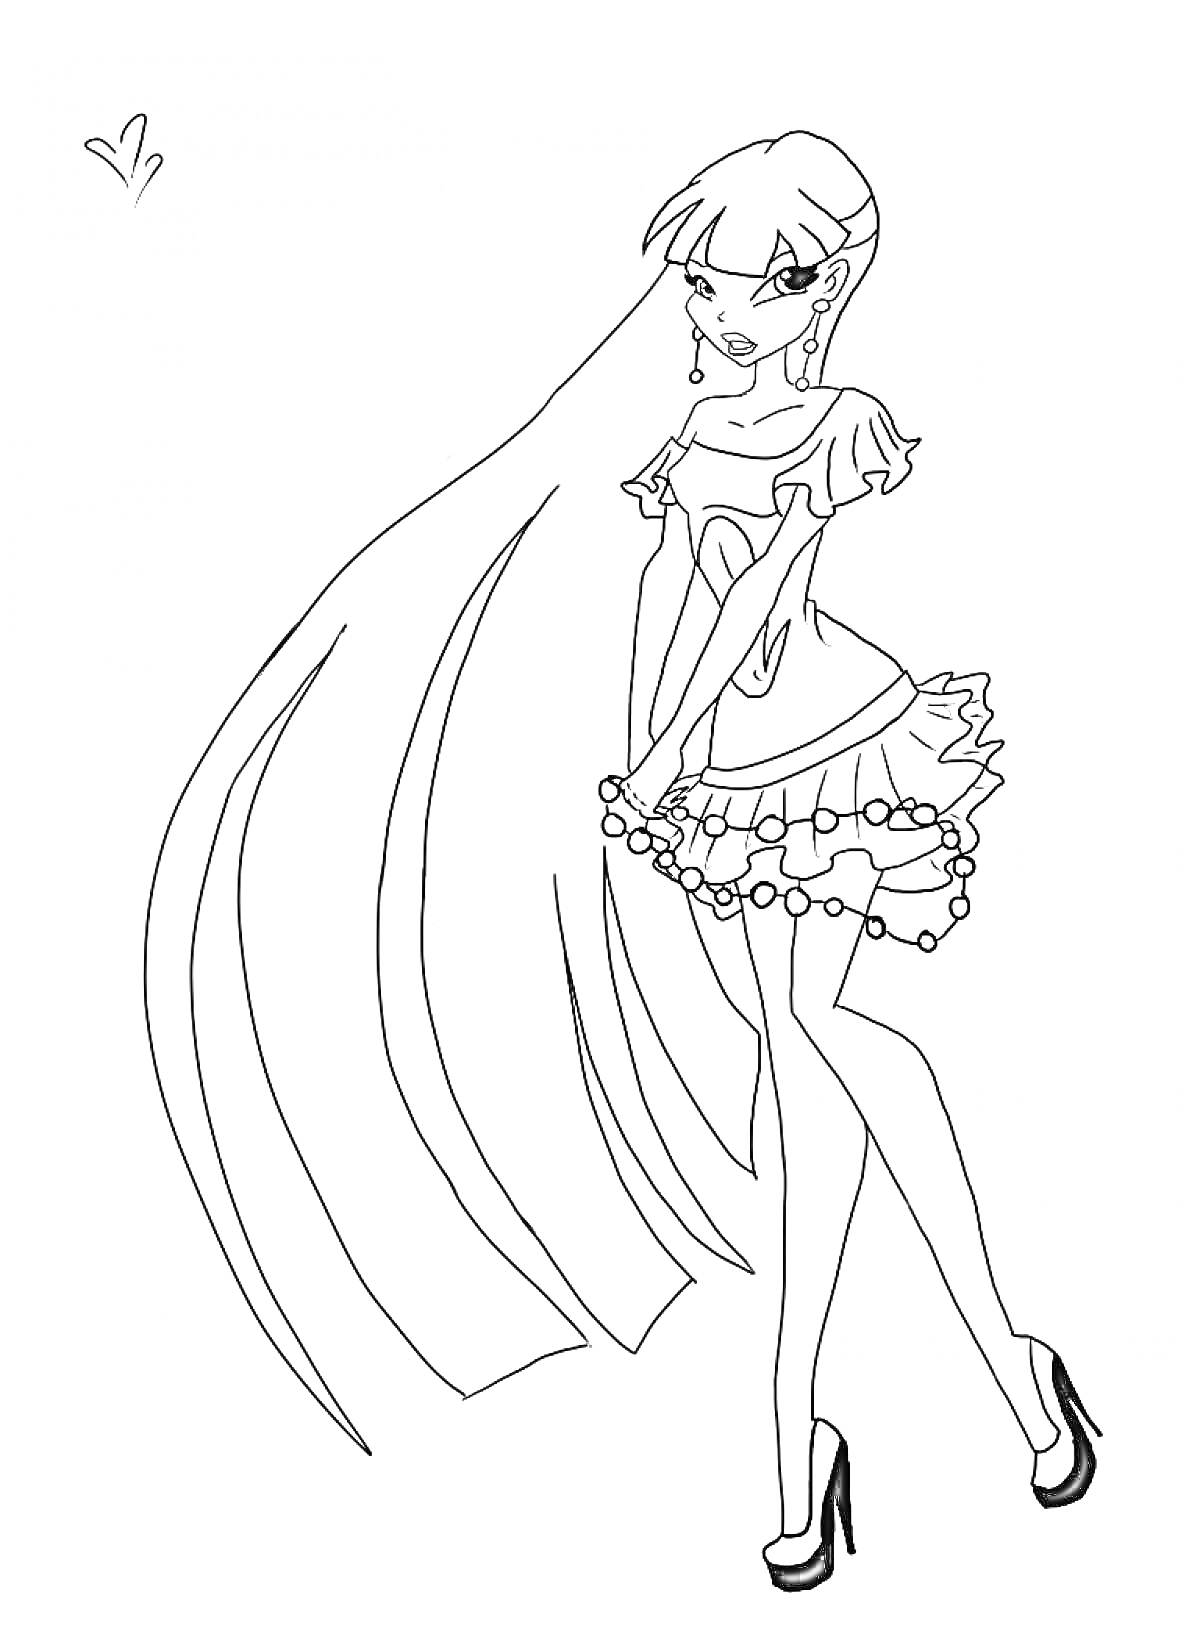 Винкс принцесса с длинными волосами в коротком платье и туфлях на высоком каблуке